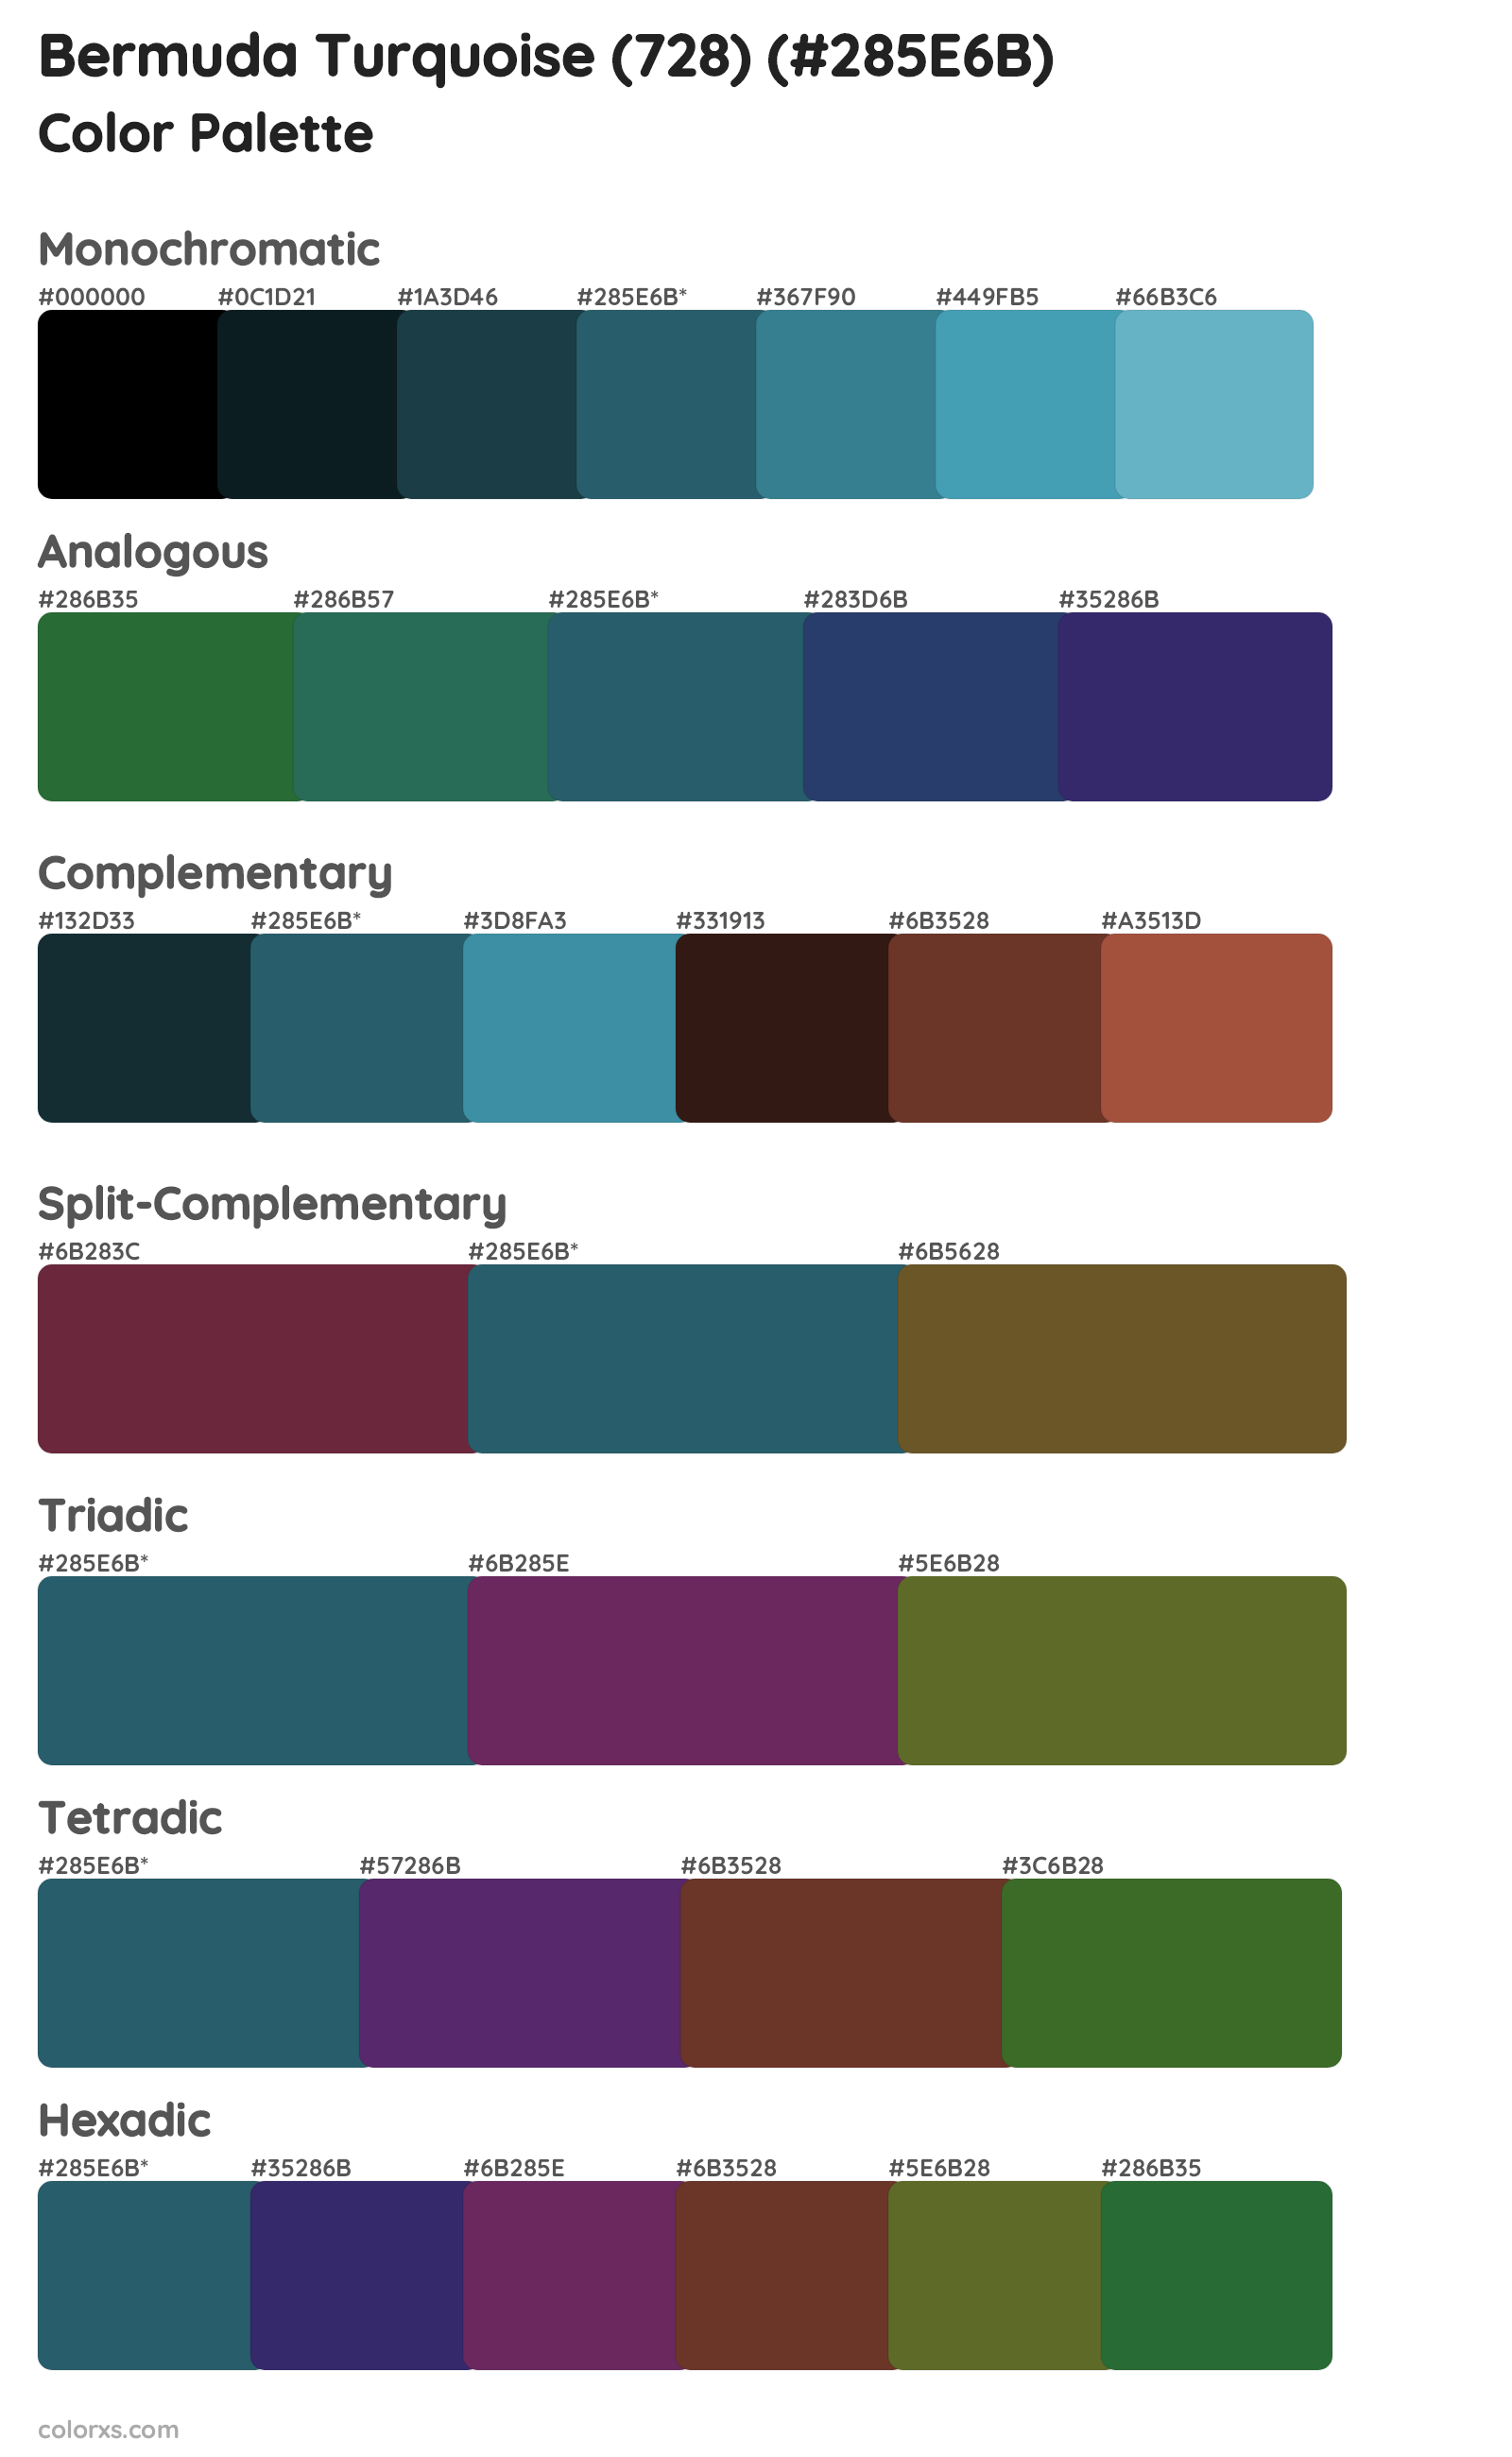 Bermuda Turquoise (728) Color Scheme Palettes